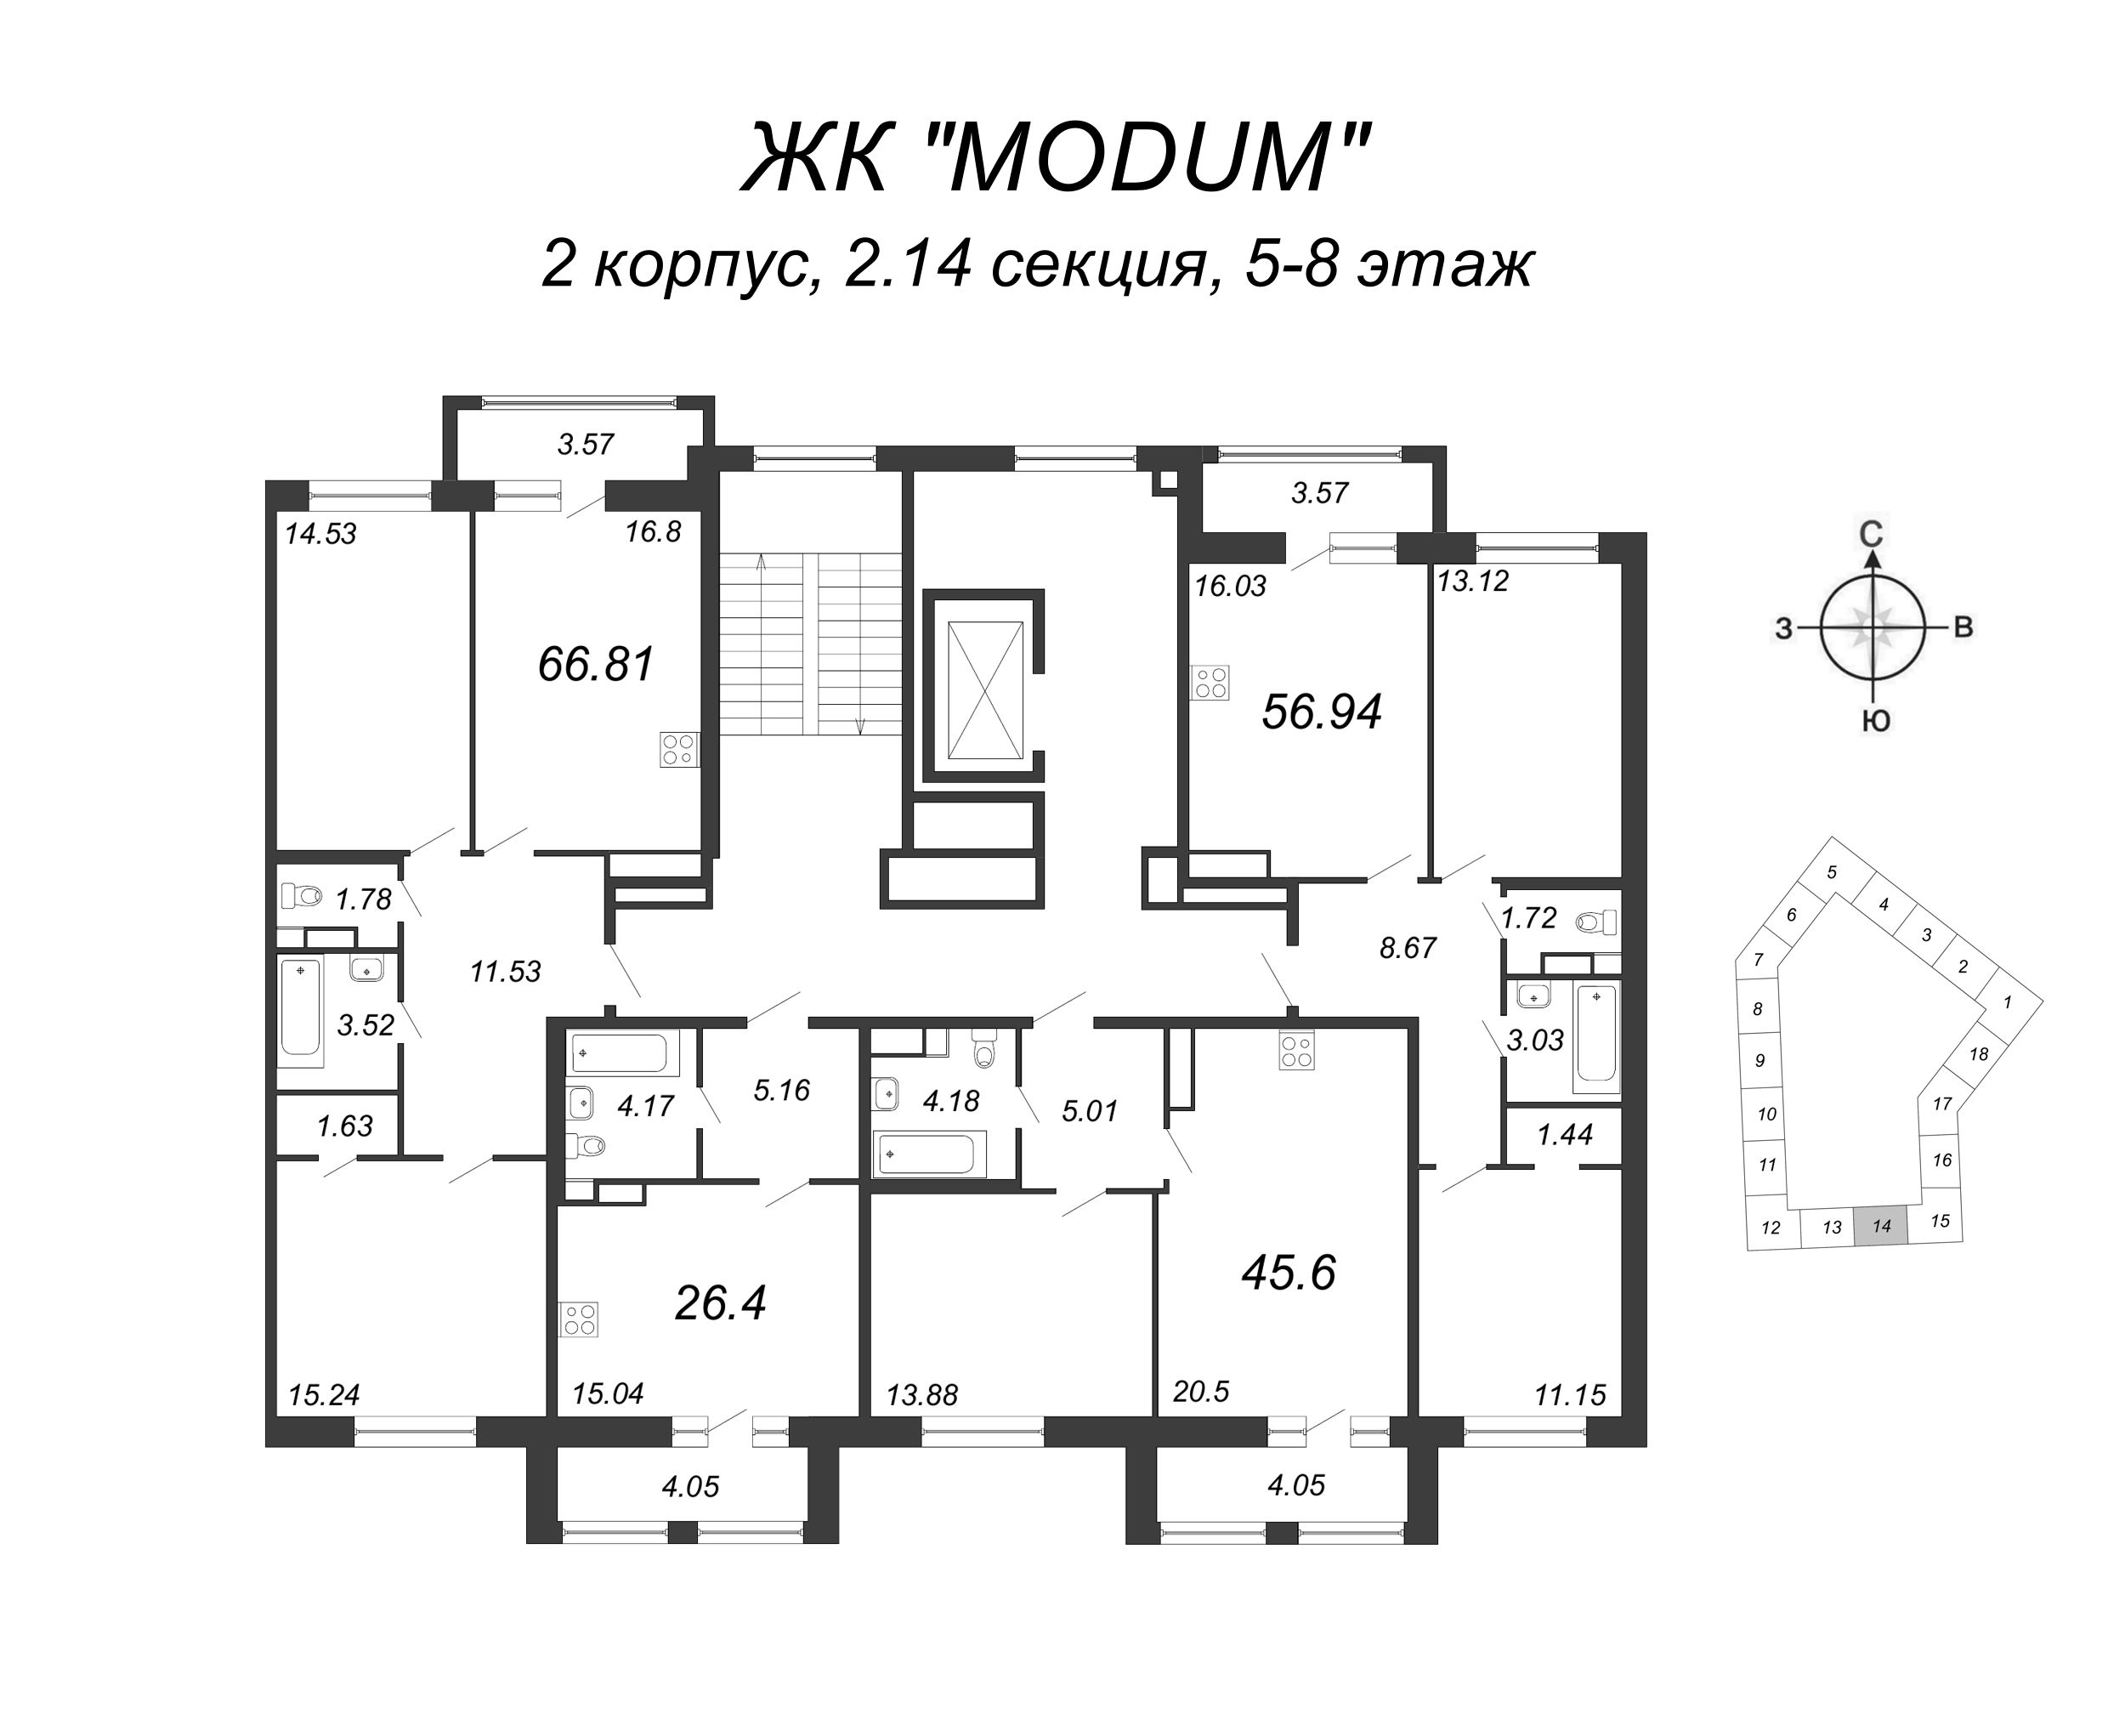 3-комнатная (Евро) квартира, 66.81 м² в ЖК "Modum" - планировка этажа